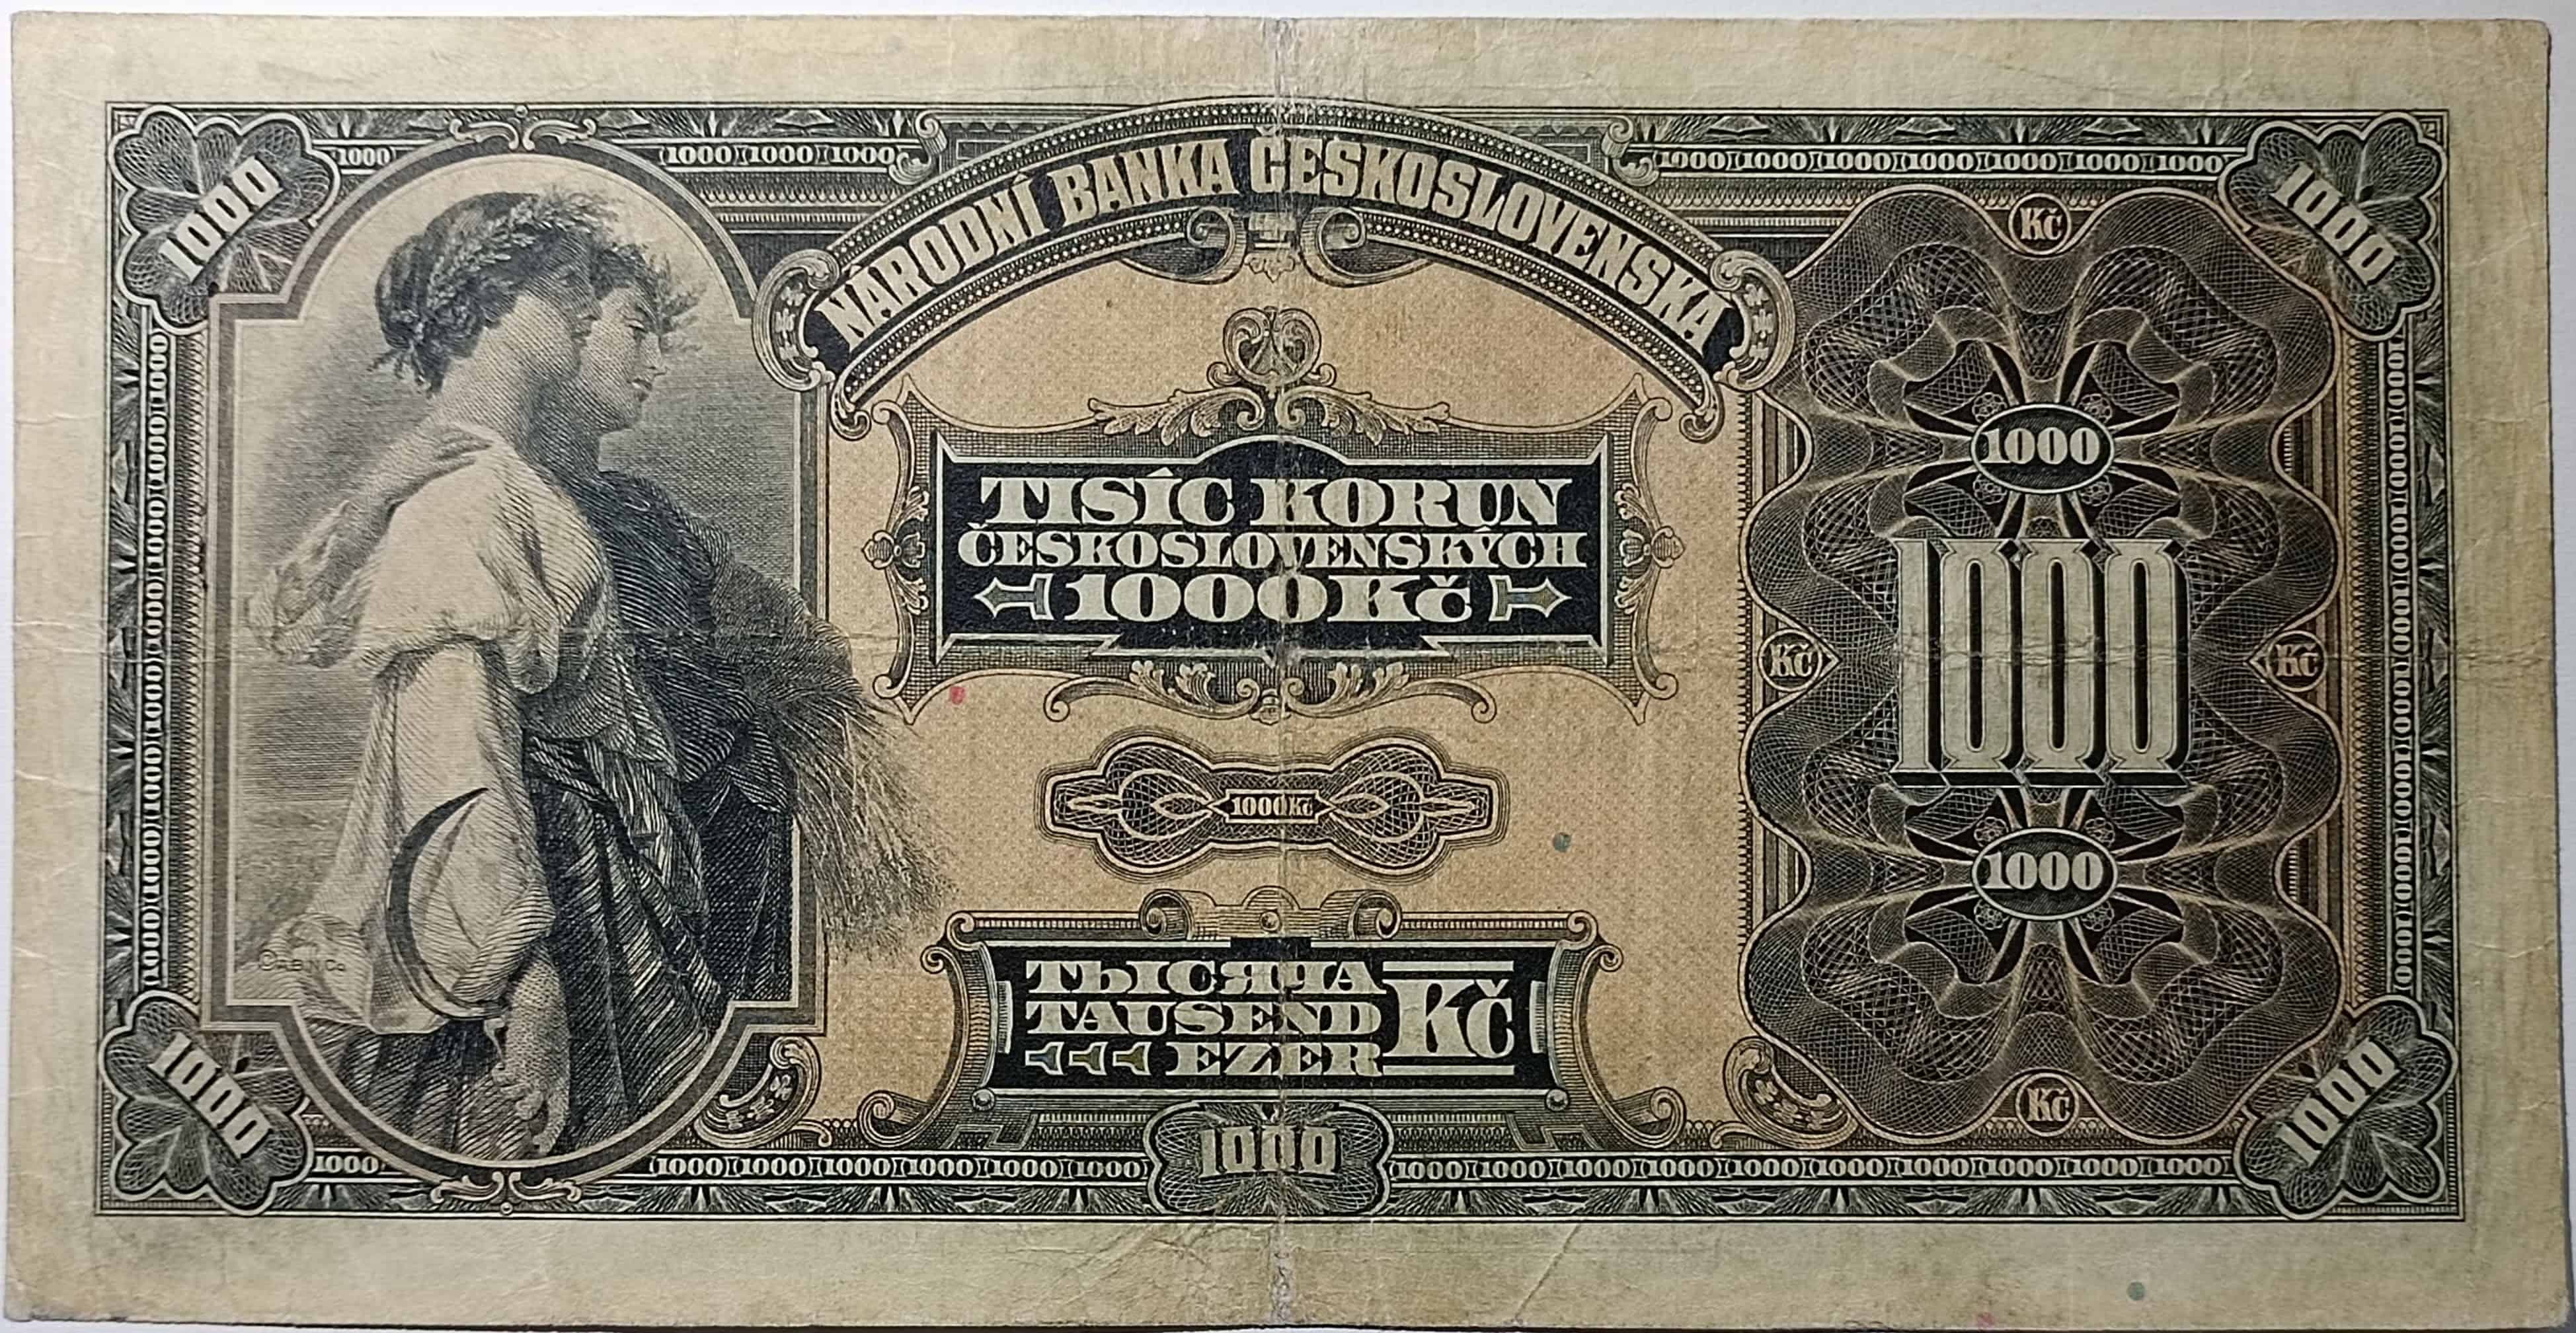 1000 Kč 1932 C